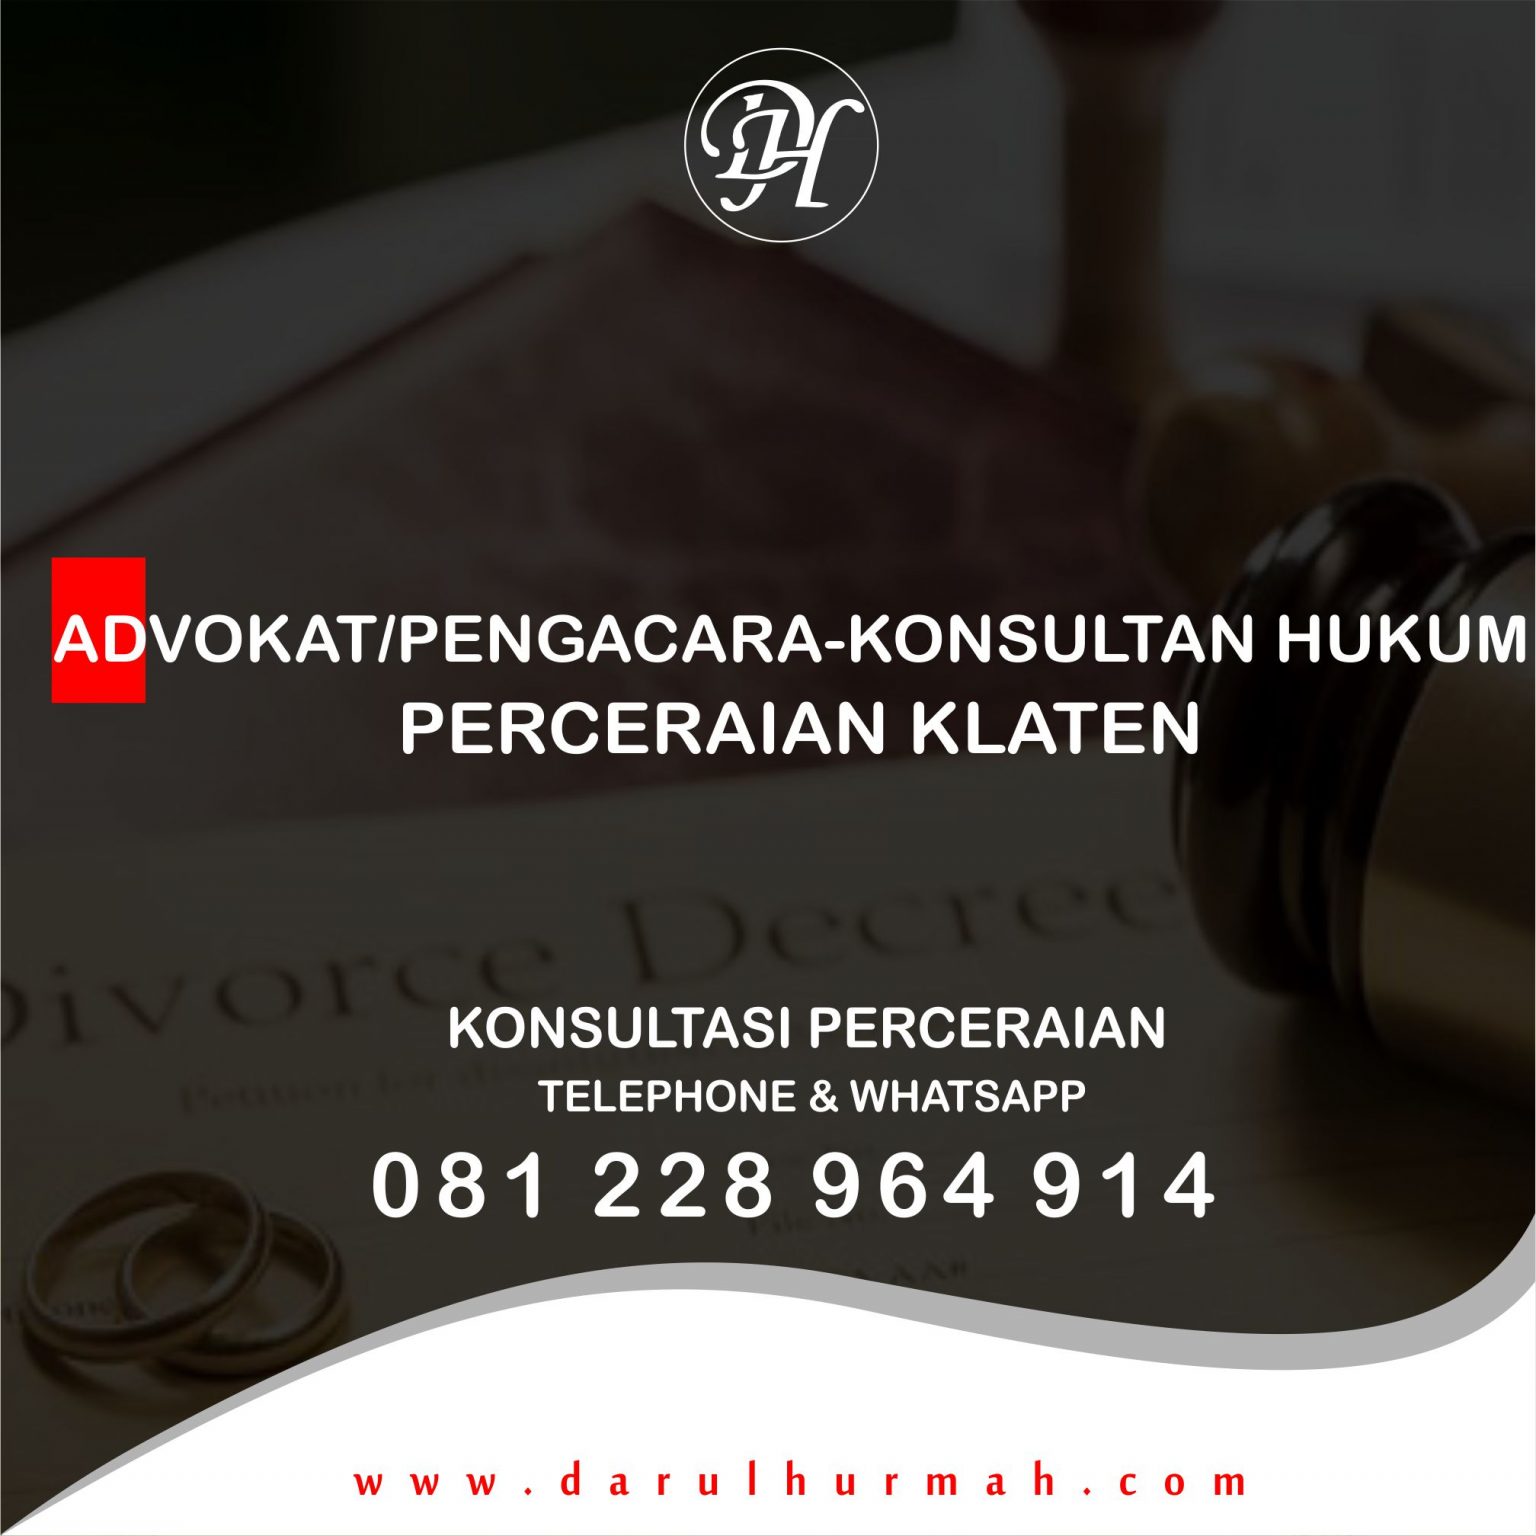 Pengacara Klaten, Kantor Pengacra Perceraian Klaten Adalah Kantor Advokat/Pengacara – Konsultan Hukum Darul Hurmah S.H banyak berpengalaman dalam berpraktik.